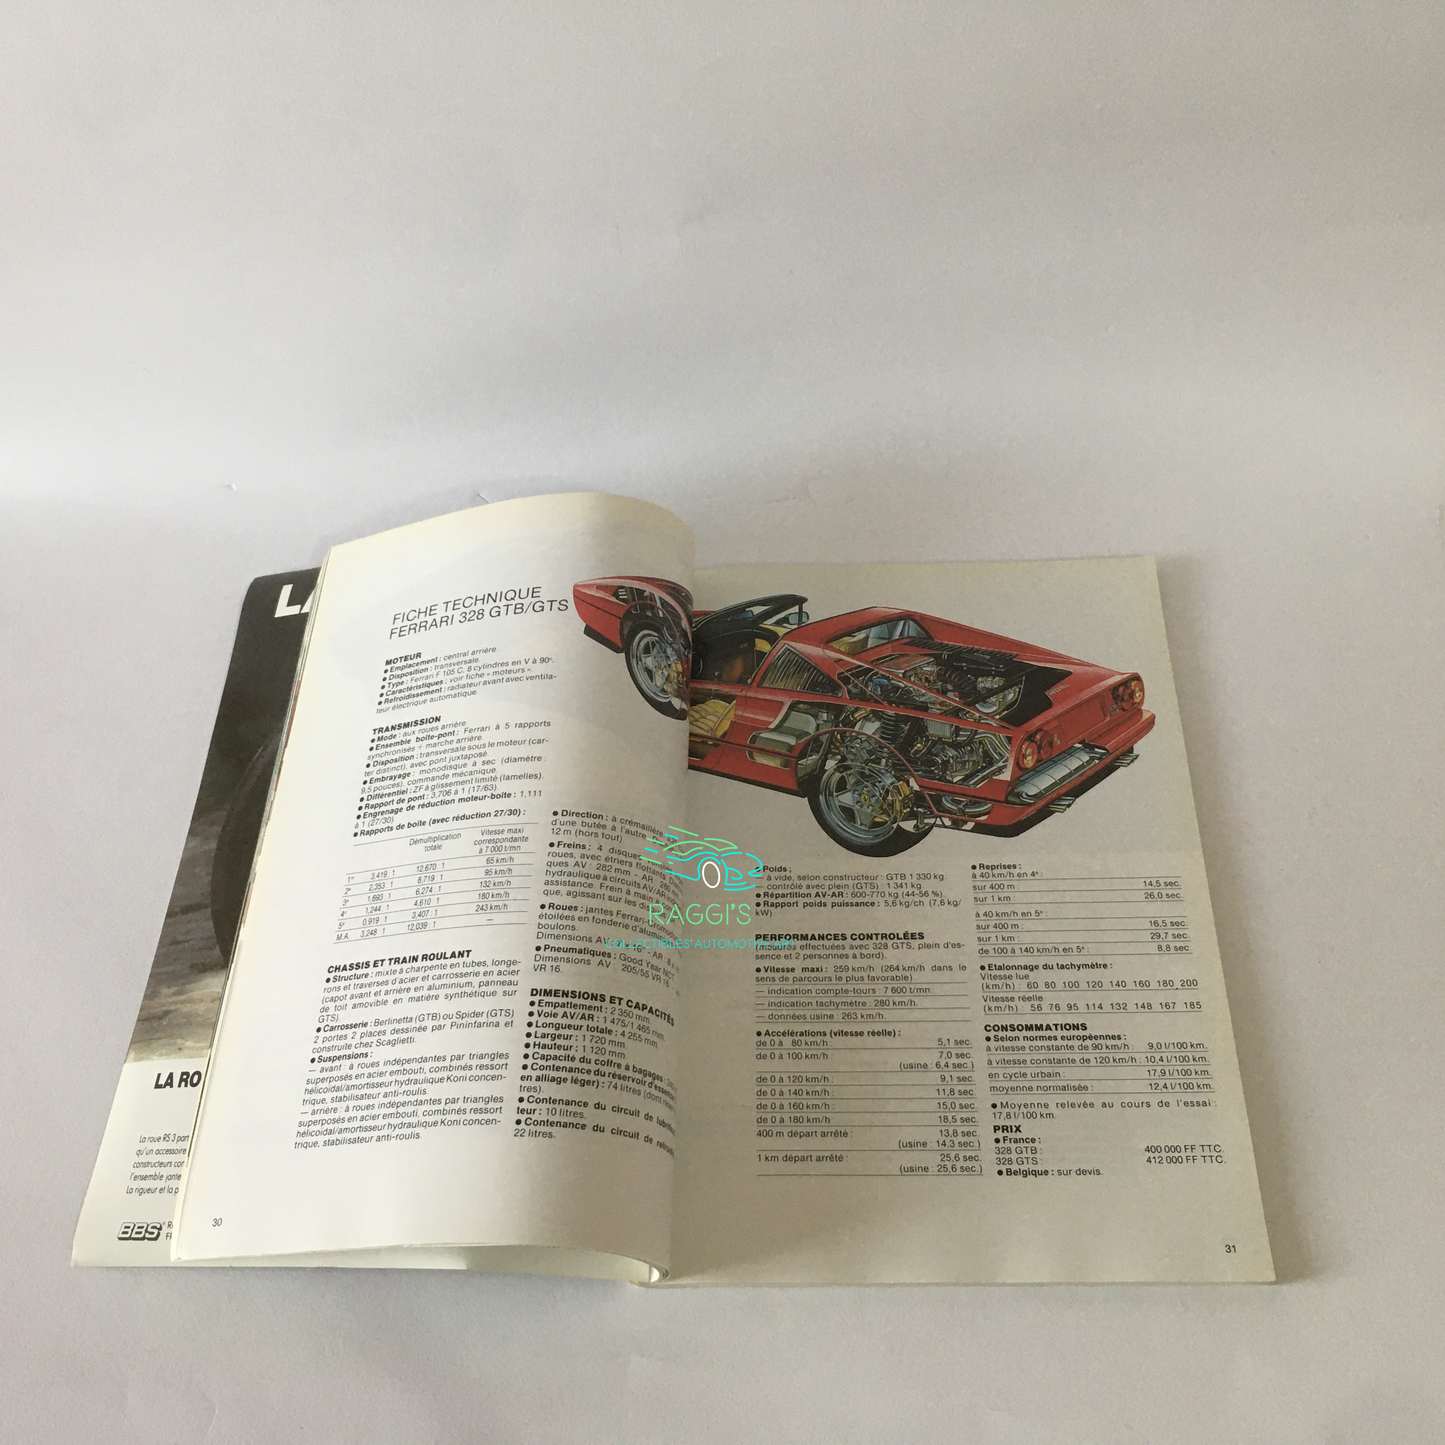 Ferrari, Rivista / Annuario Ferrari anno 1985/86 Lingua Francese